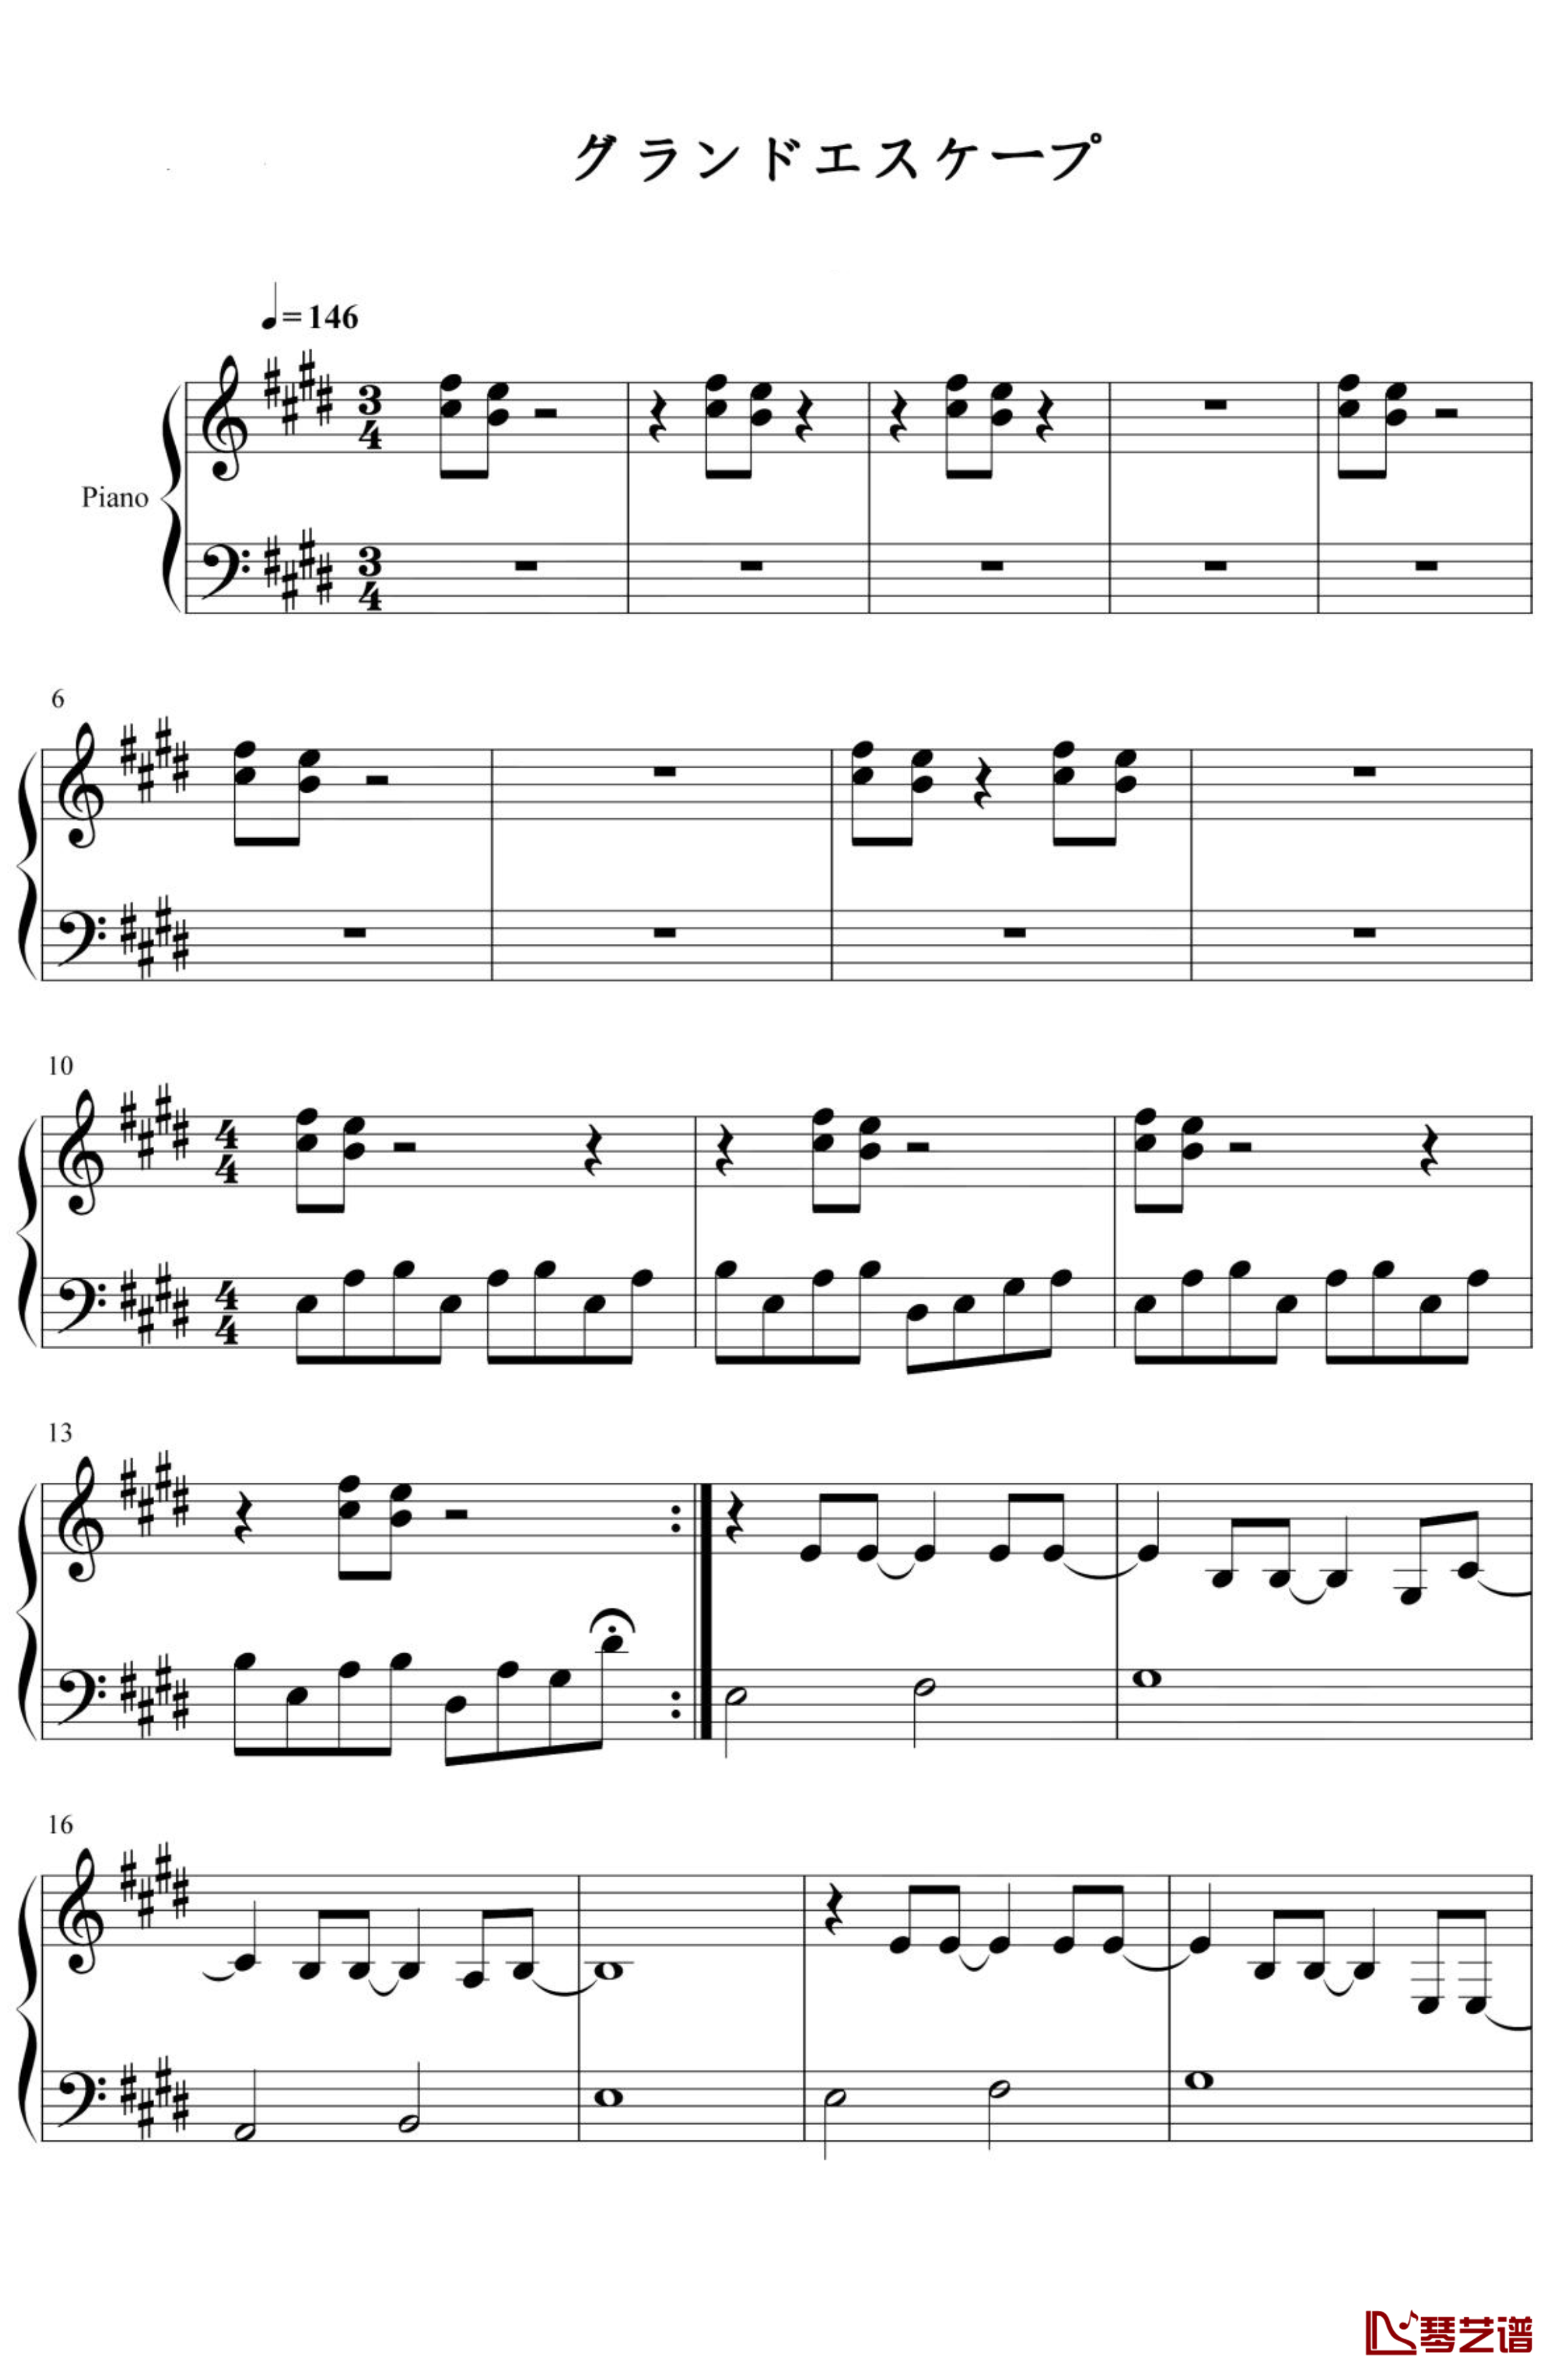 天气之子-グランドエスケープ钢琴谱 简化1